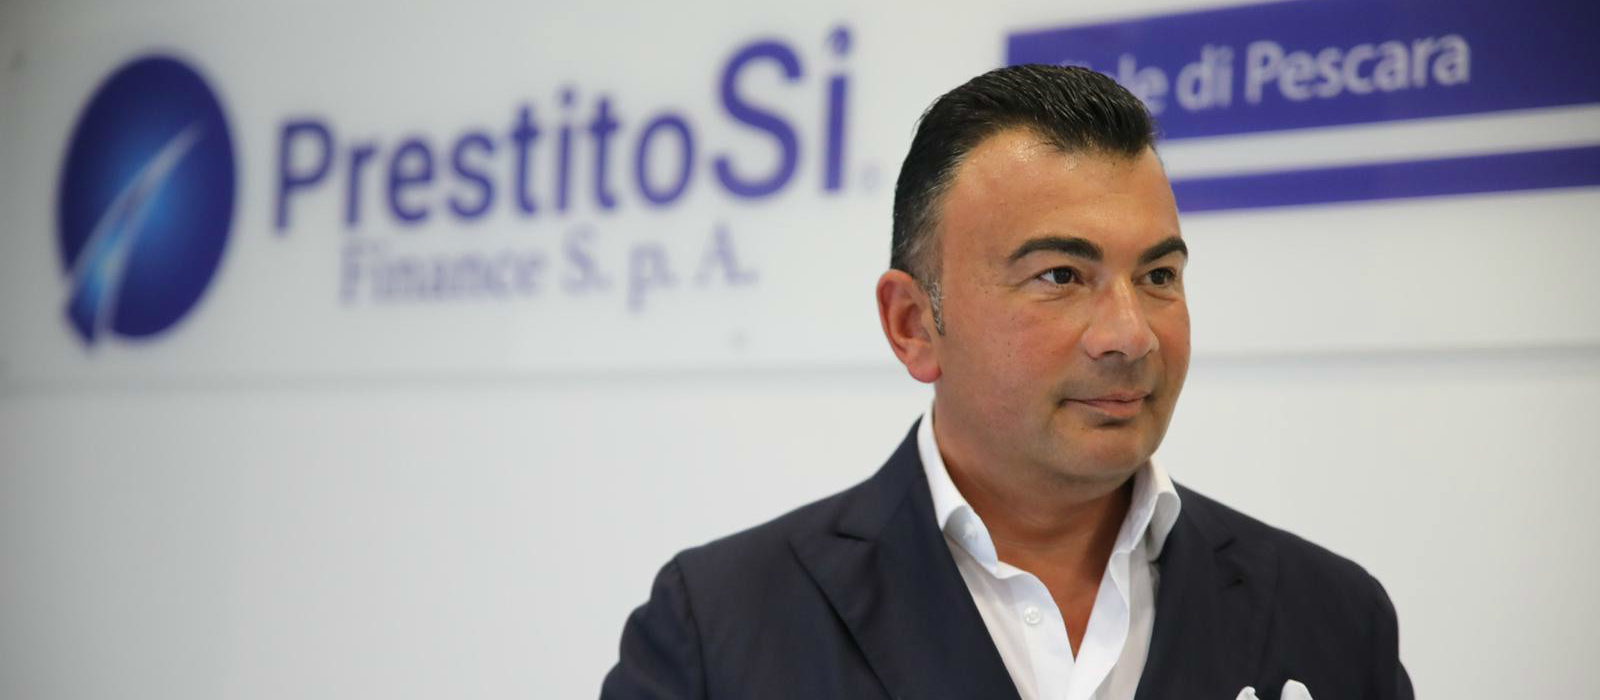 Vincenzo Barba, presidente Holding H2B e fondatore del brand PrestitoSì